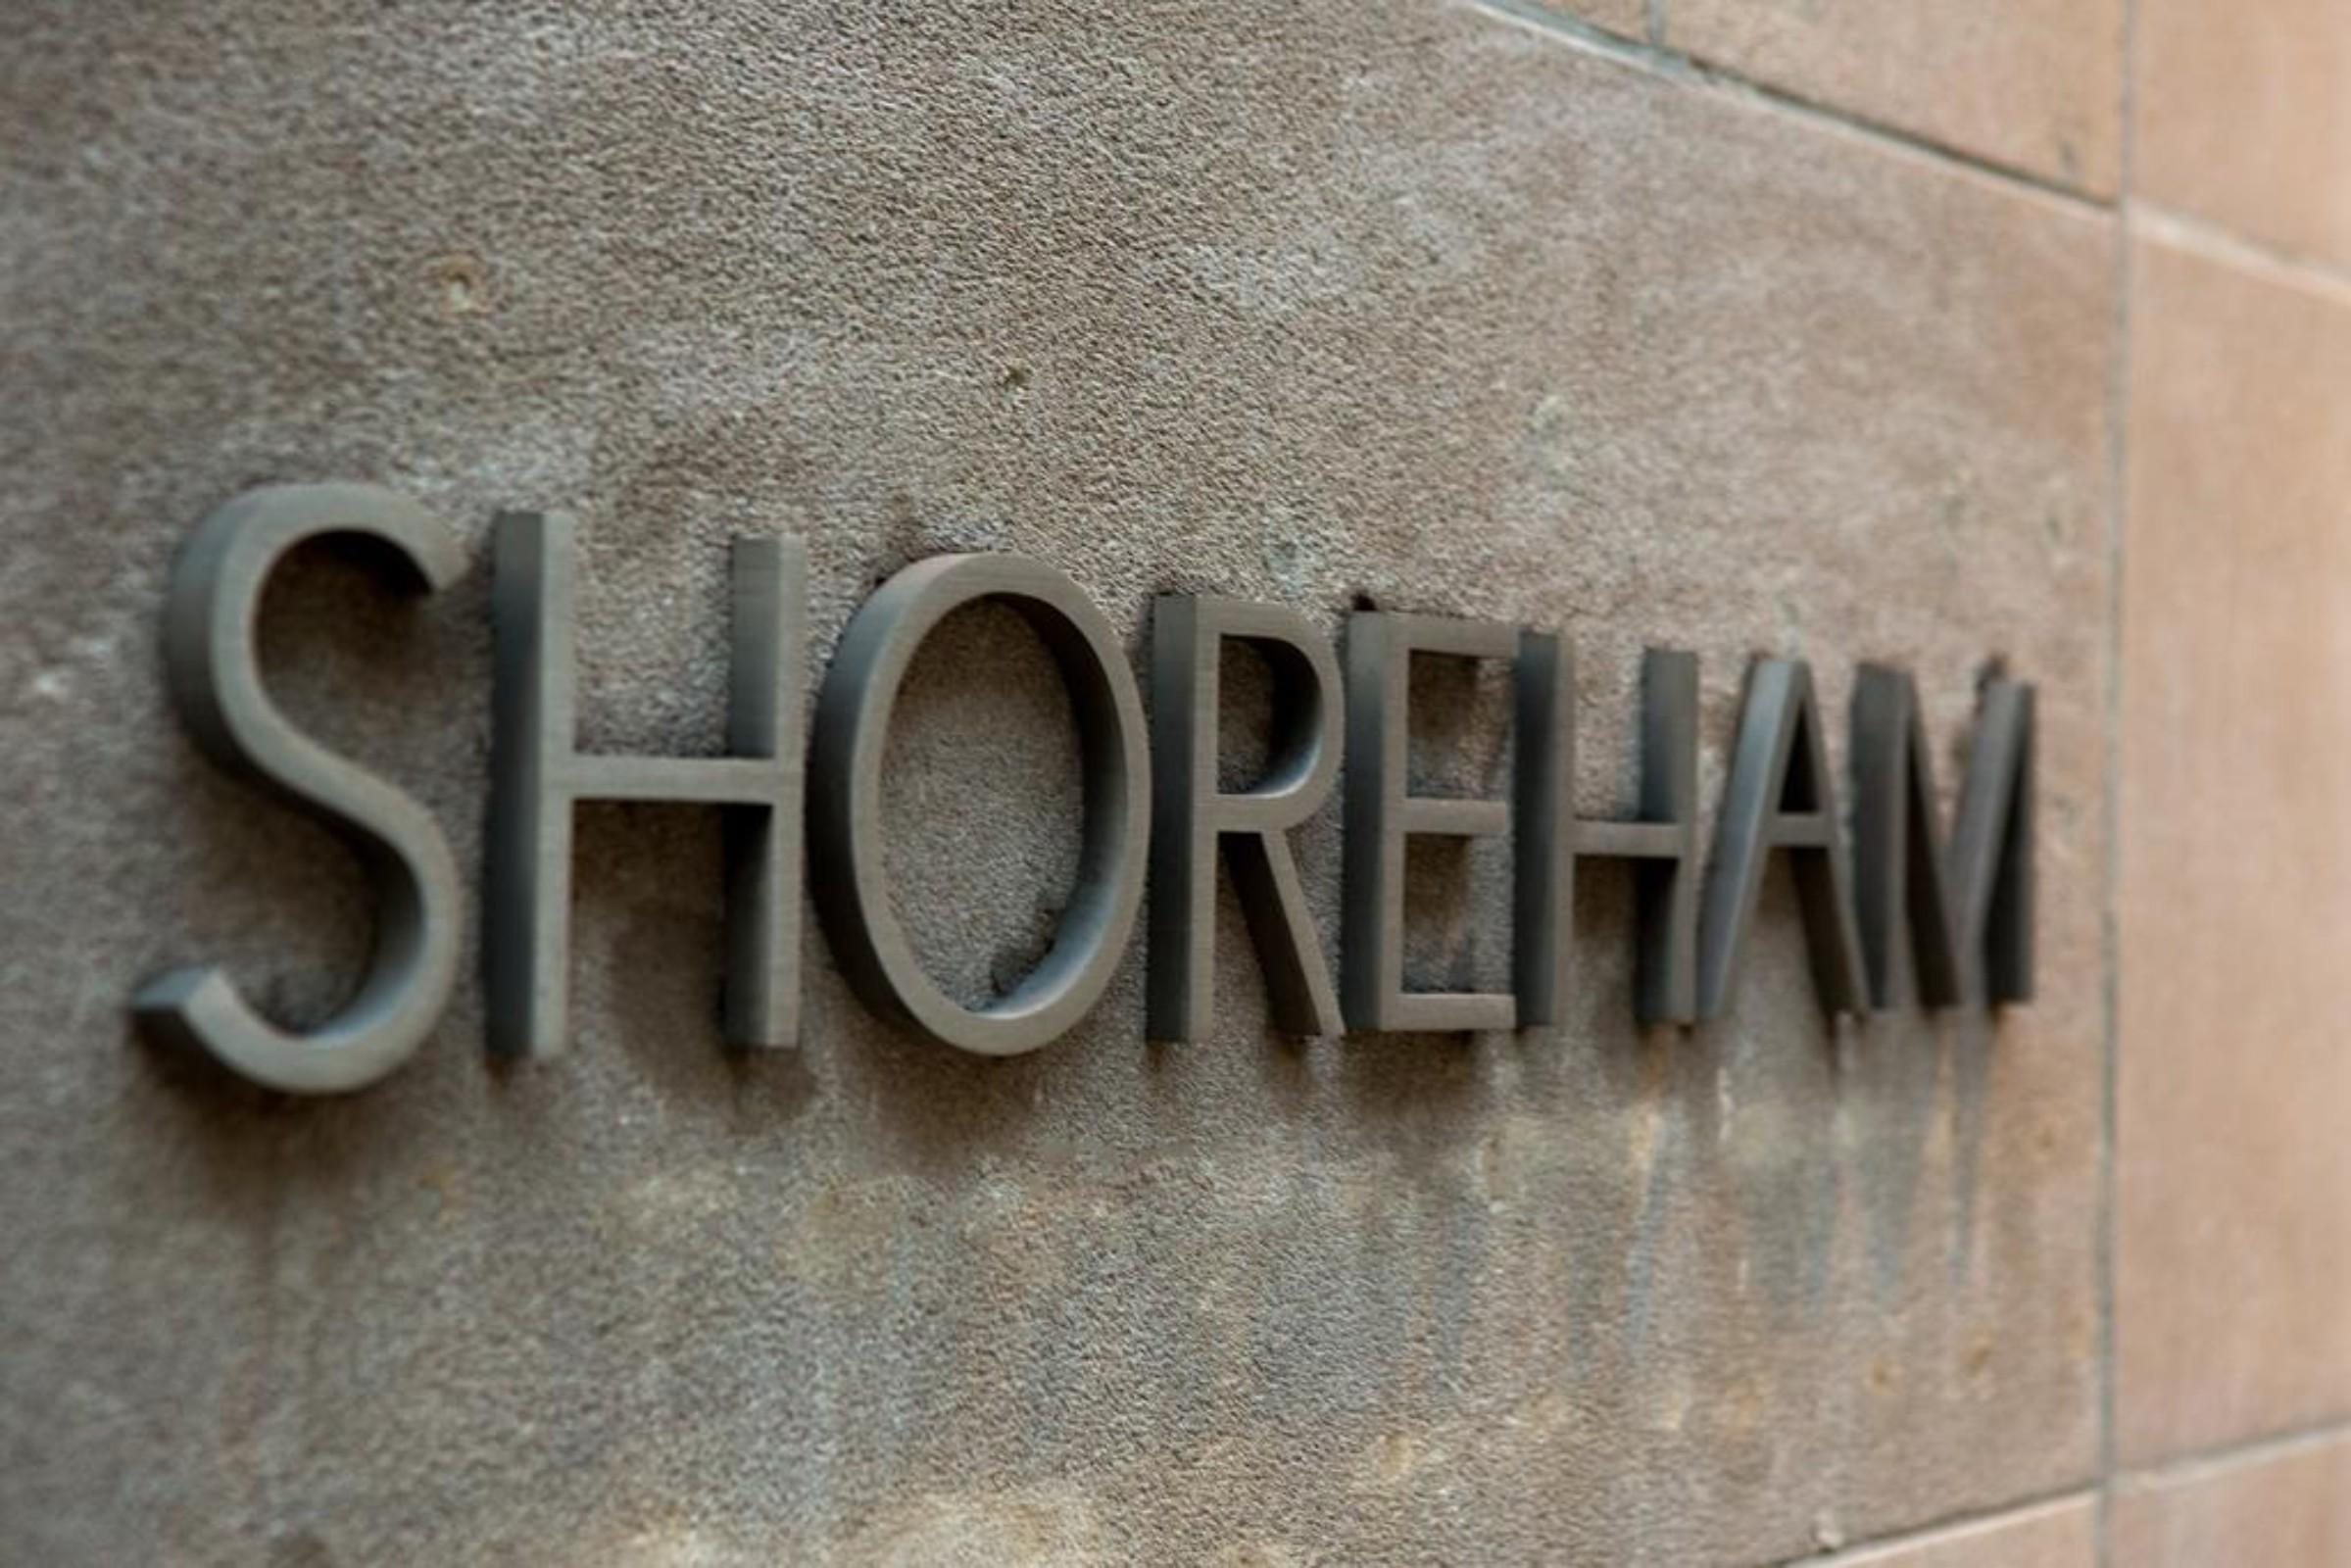 Shoreham Hotel New York Eksteriør bilde